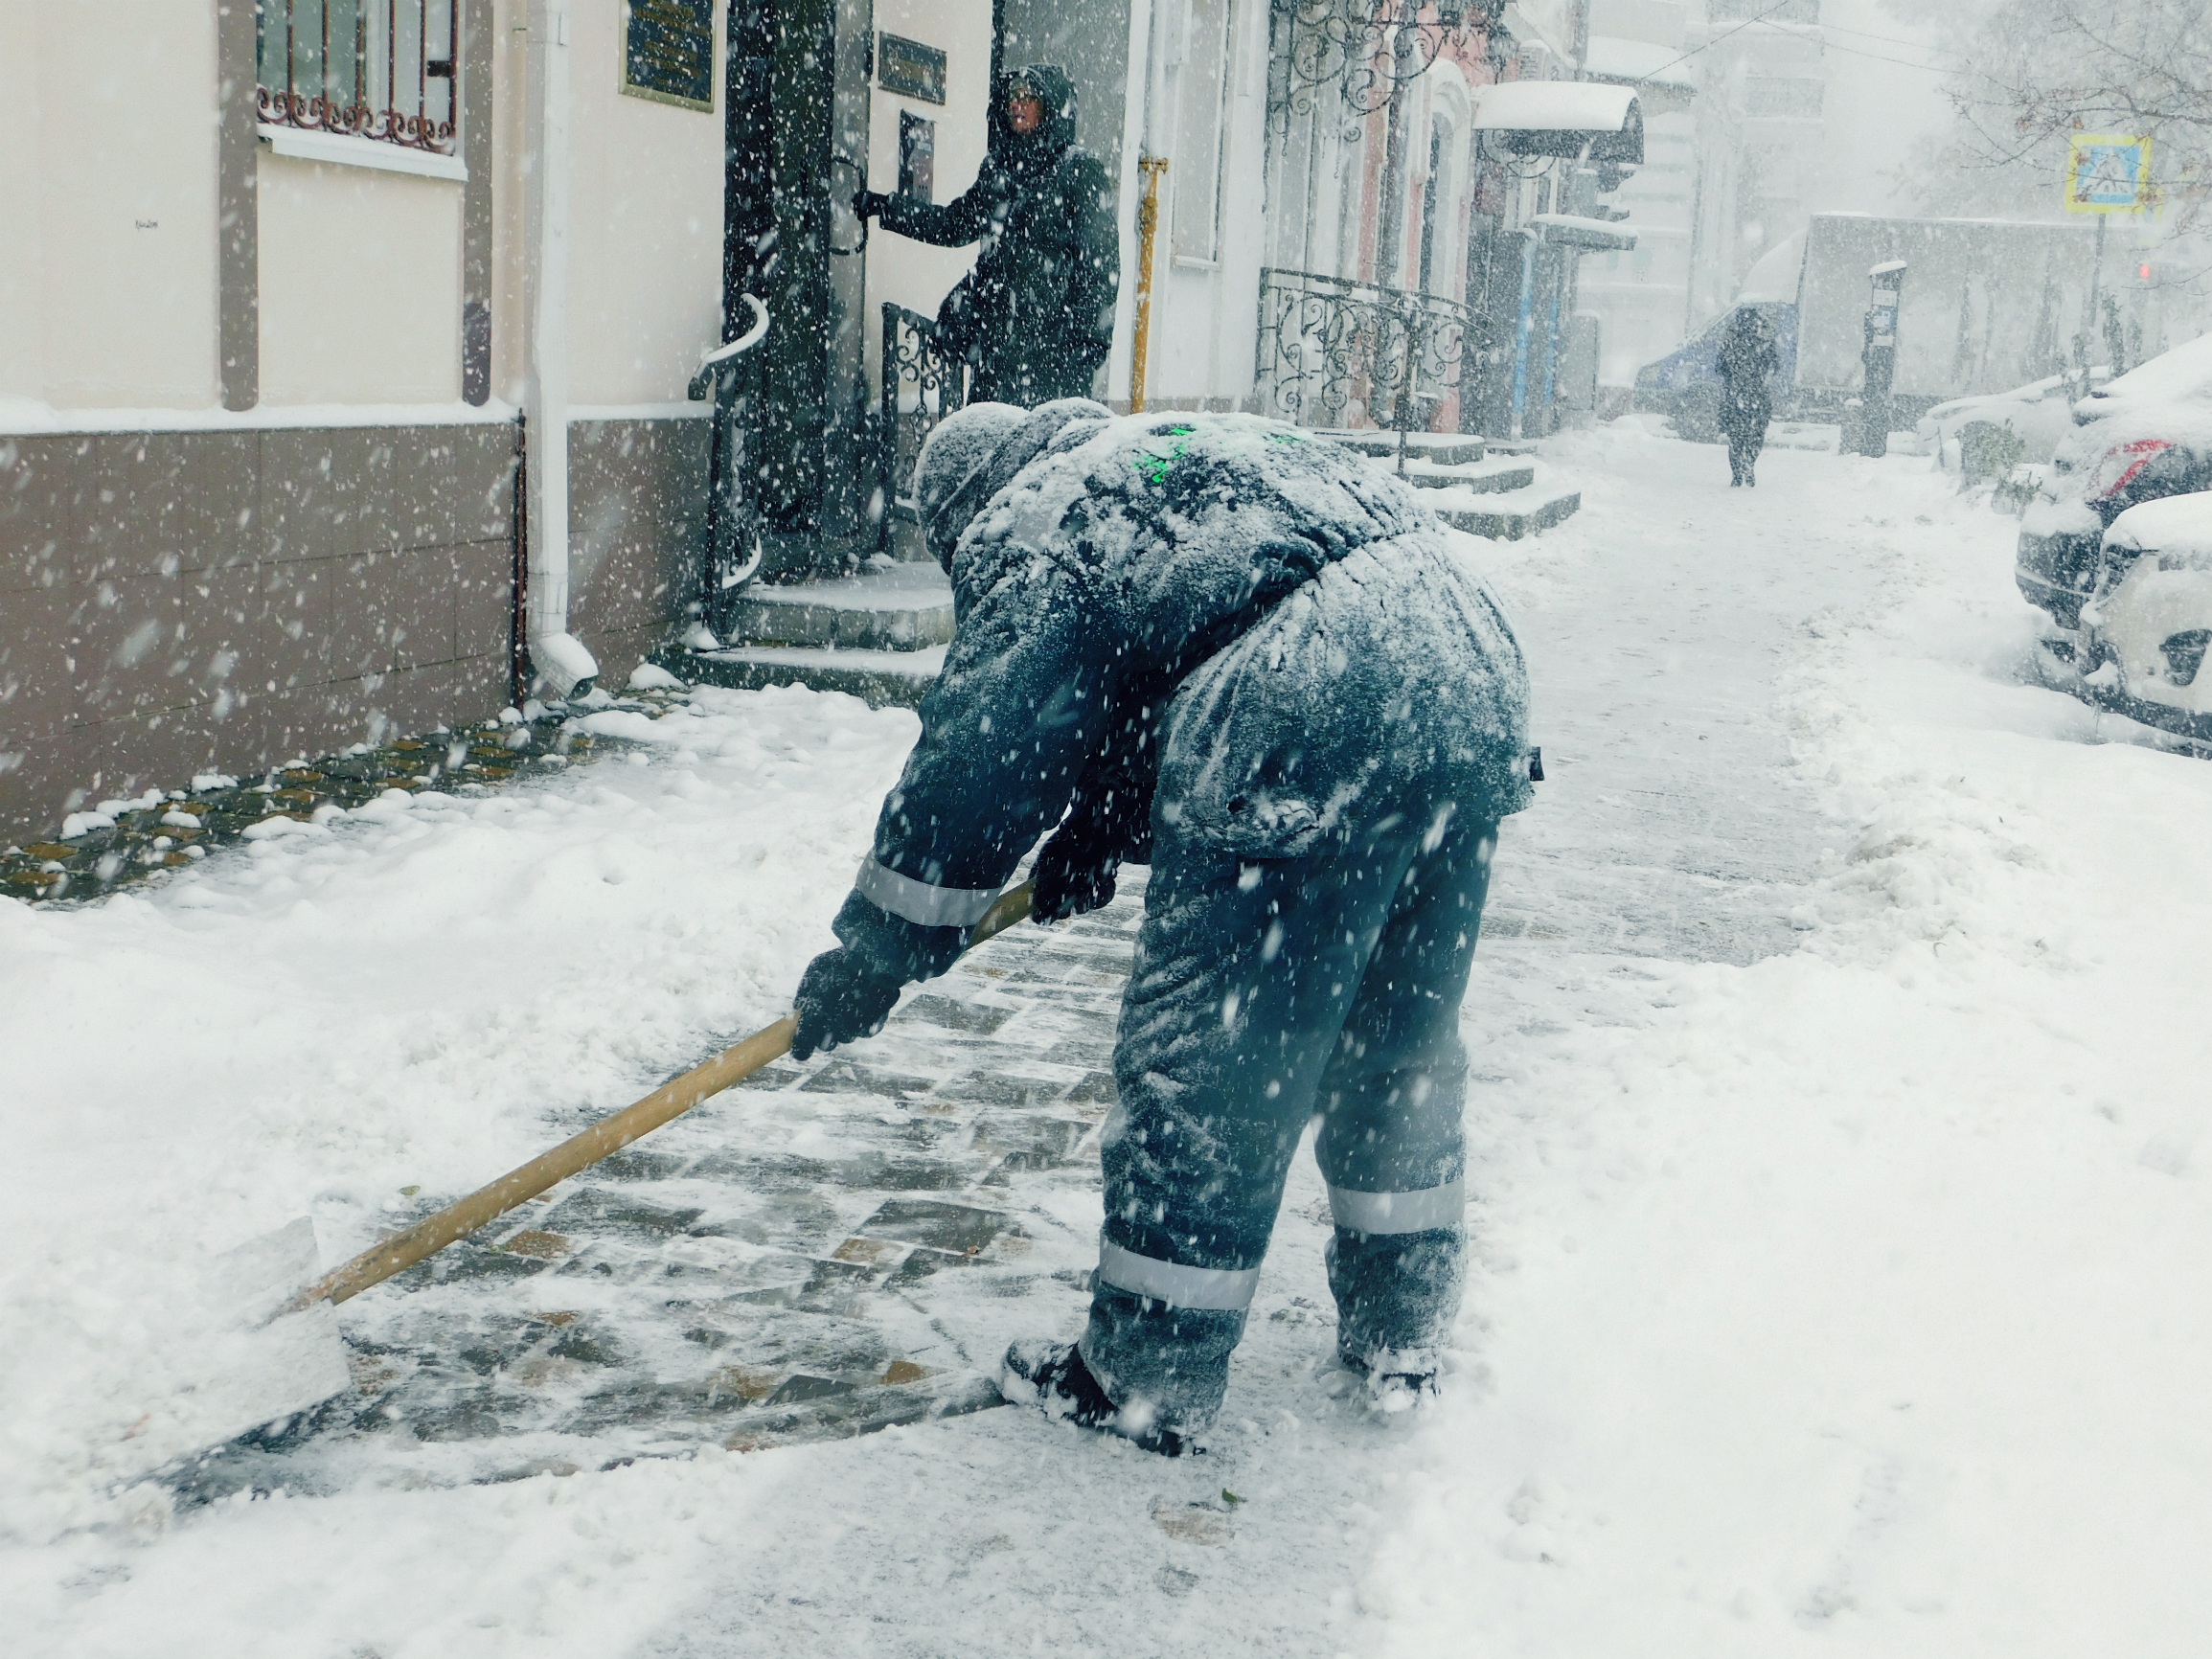 Жителей Тобольска насторожил неожиданный сброс городского снега в Иртыш